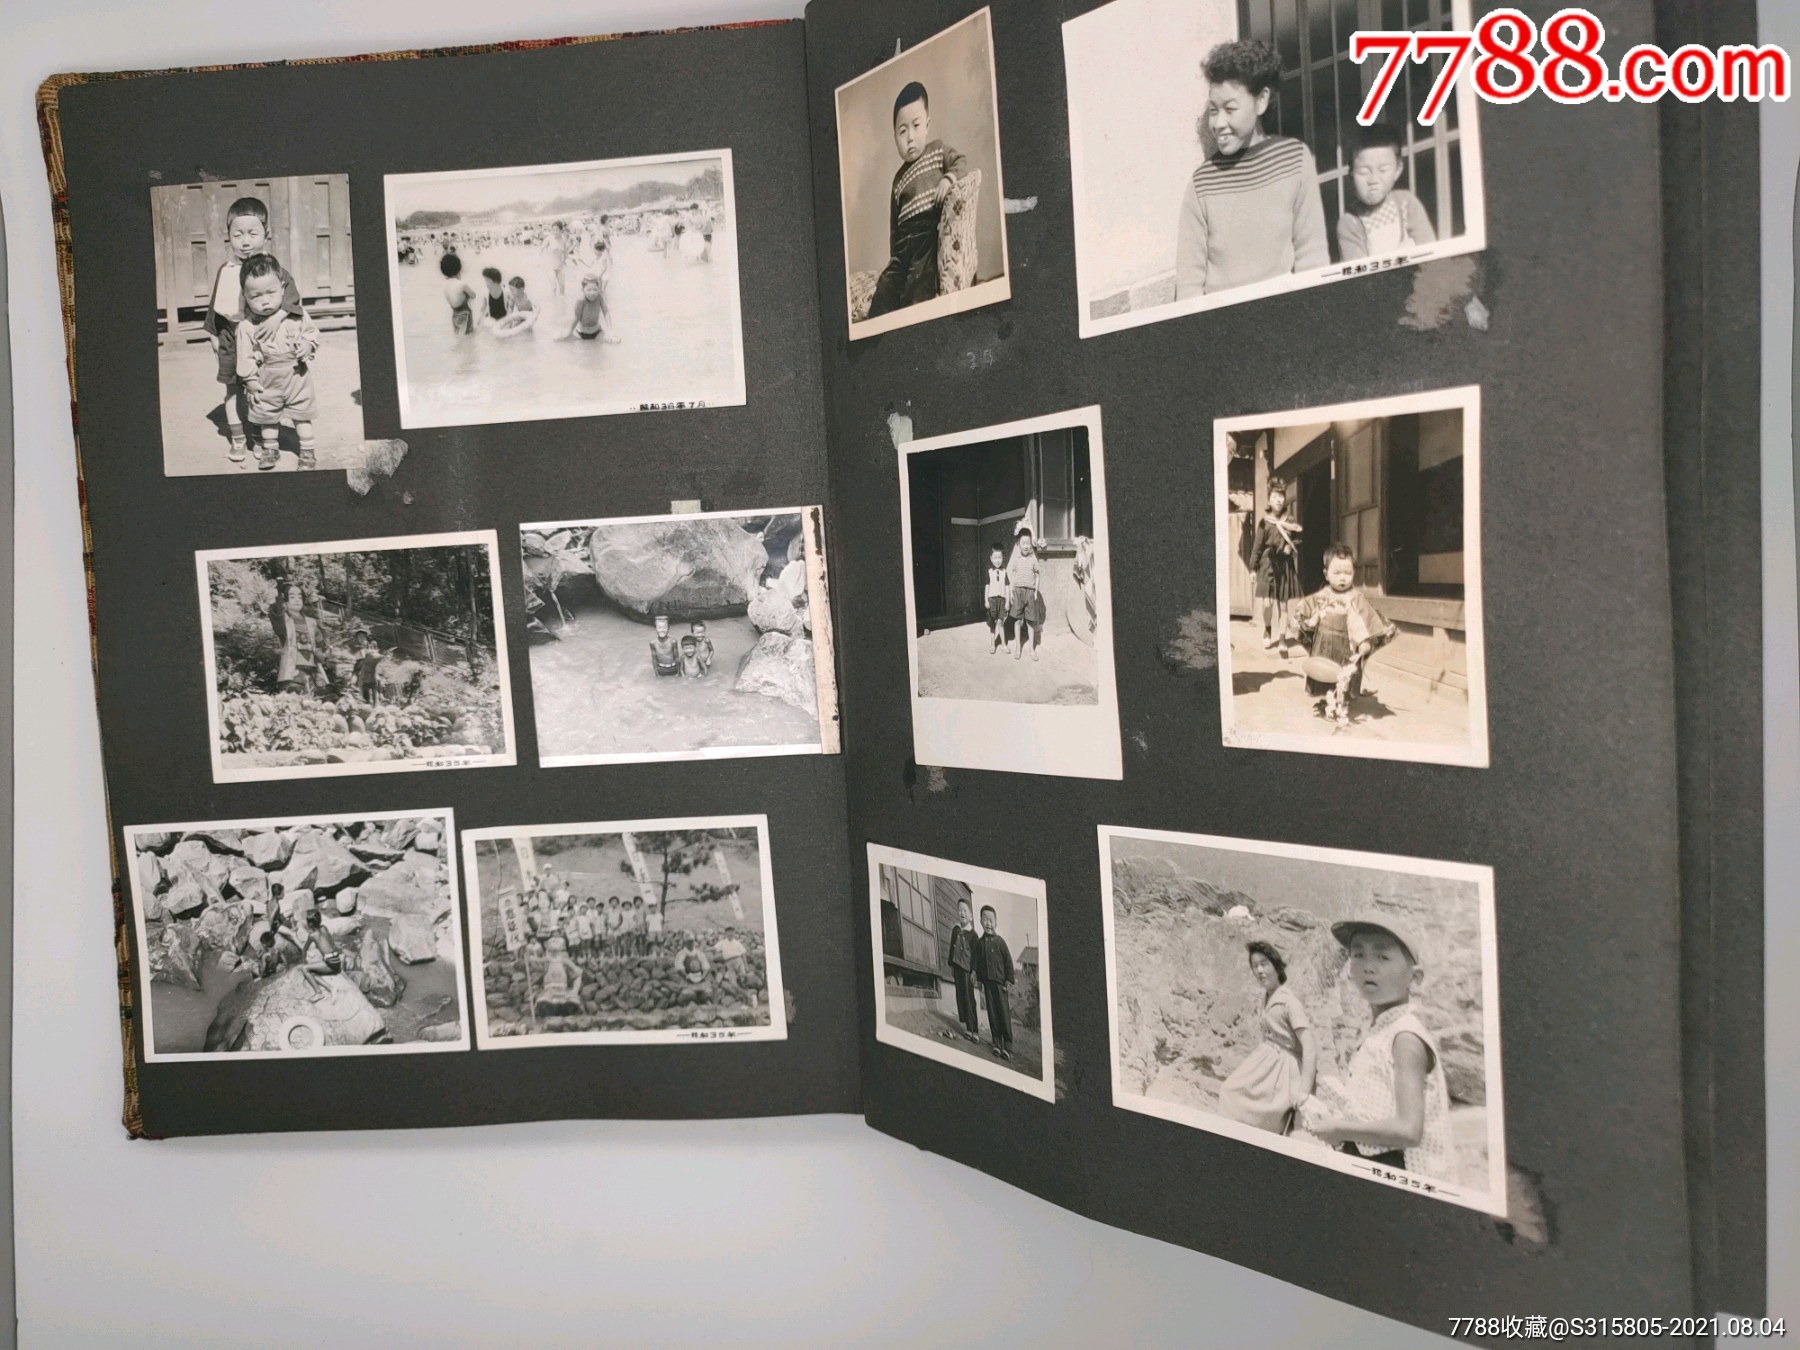 日本家庭相册老照片黑白照人物写真家庭生活风景照儿童照片老相册